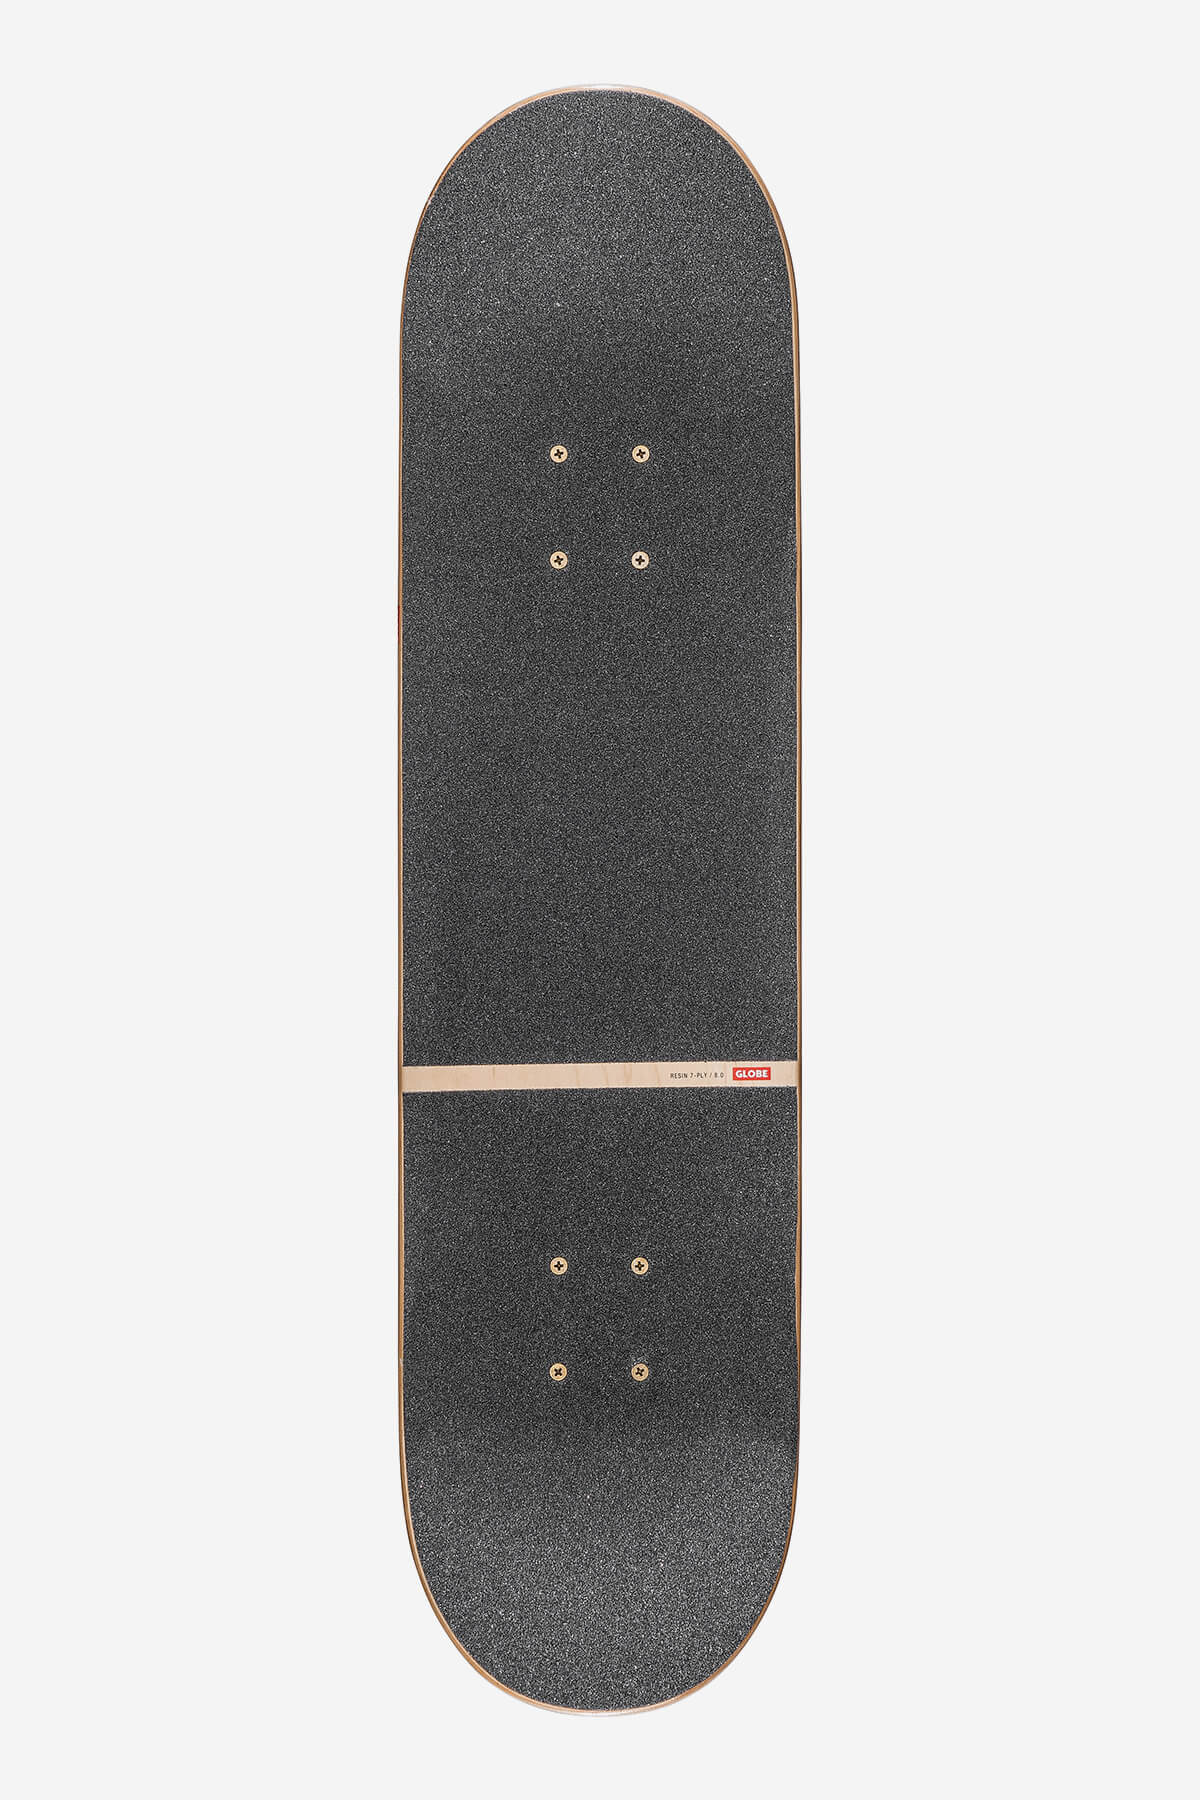 g3 bar zwart 8,0" compleet skateboard